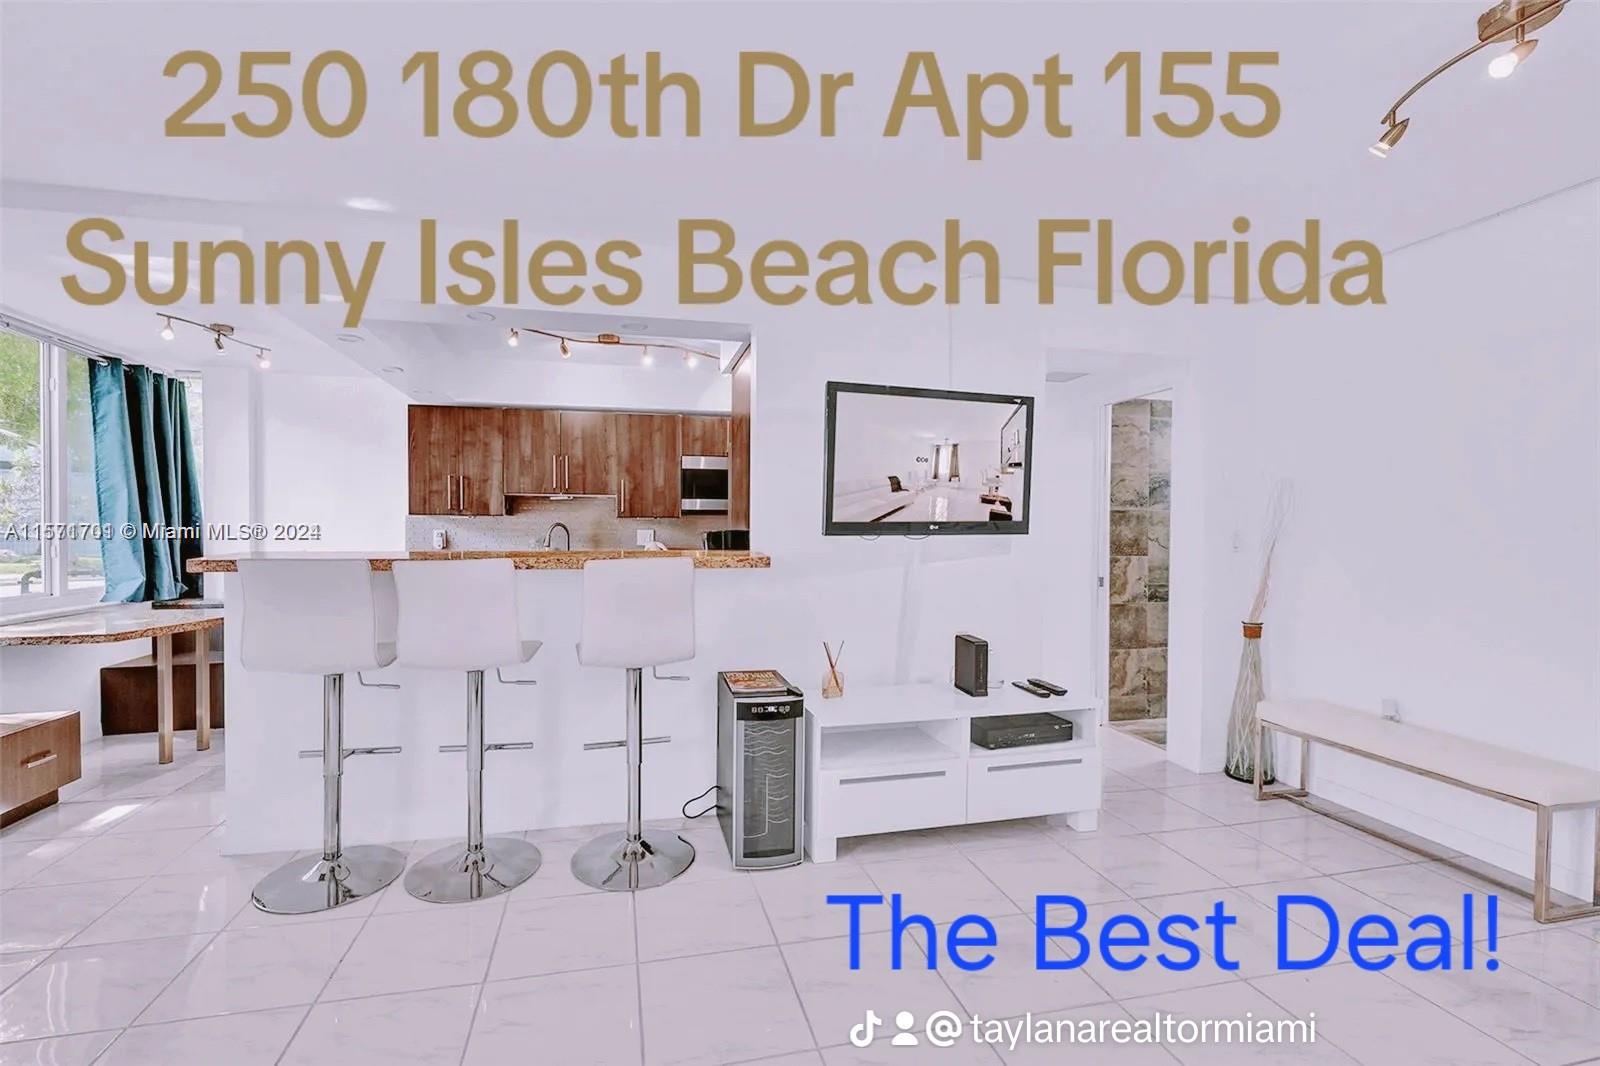 250 180th Dr 155, Sunny Isles Beach, Miami-Dade County, Florida - 2 Bedrooms  
2 Bathrooms - 